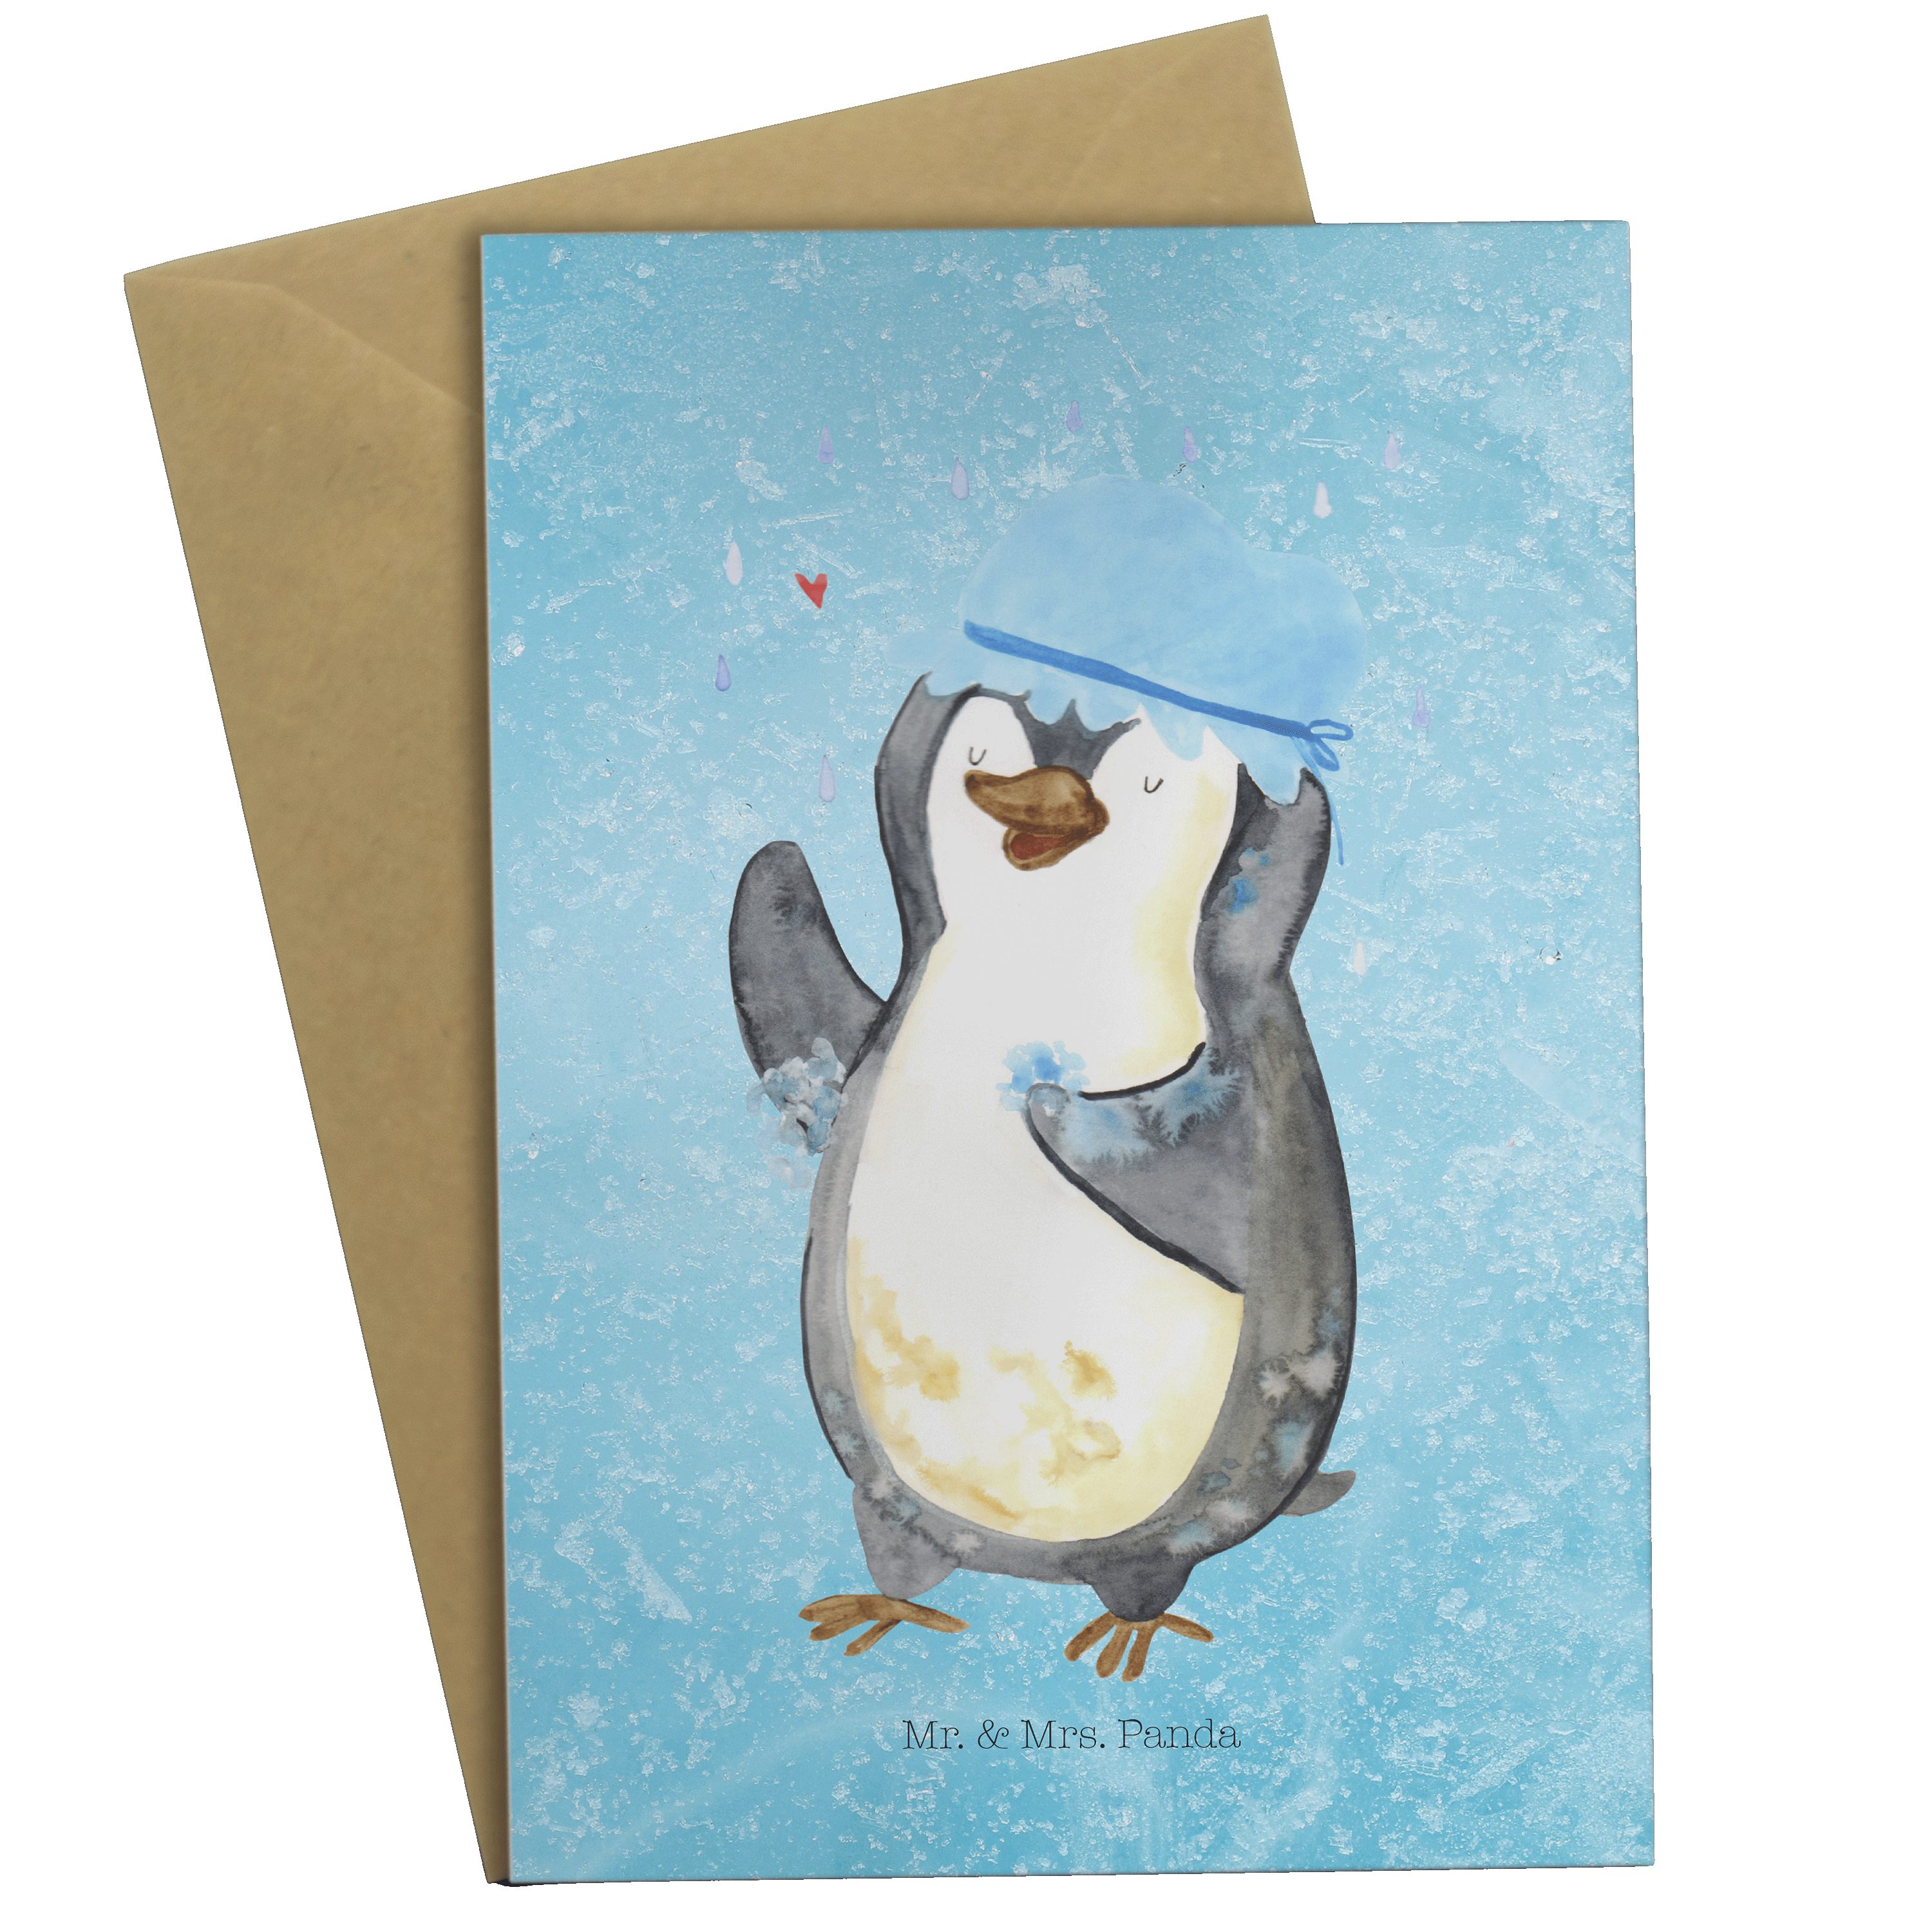 Mr. & Mrs. Panda duscht Hochzeitskarte, - baden, Pinguin Kl - Grußkarte Eisblau Karte, Geschenk